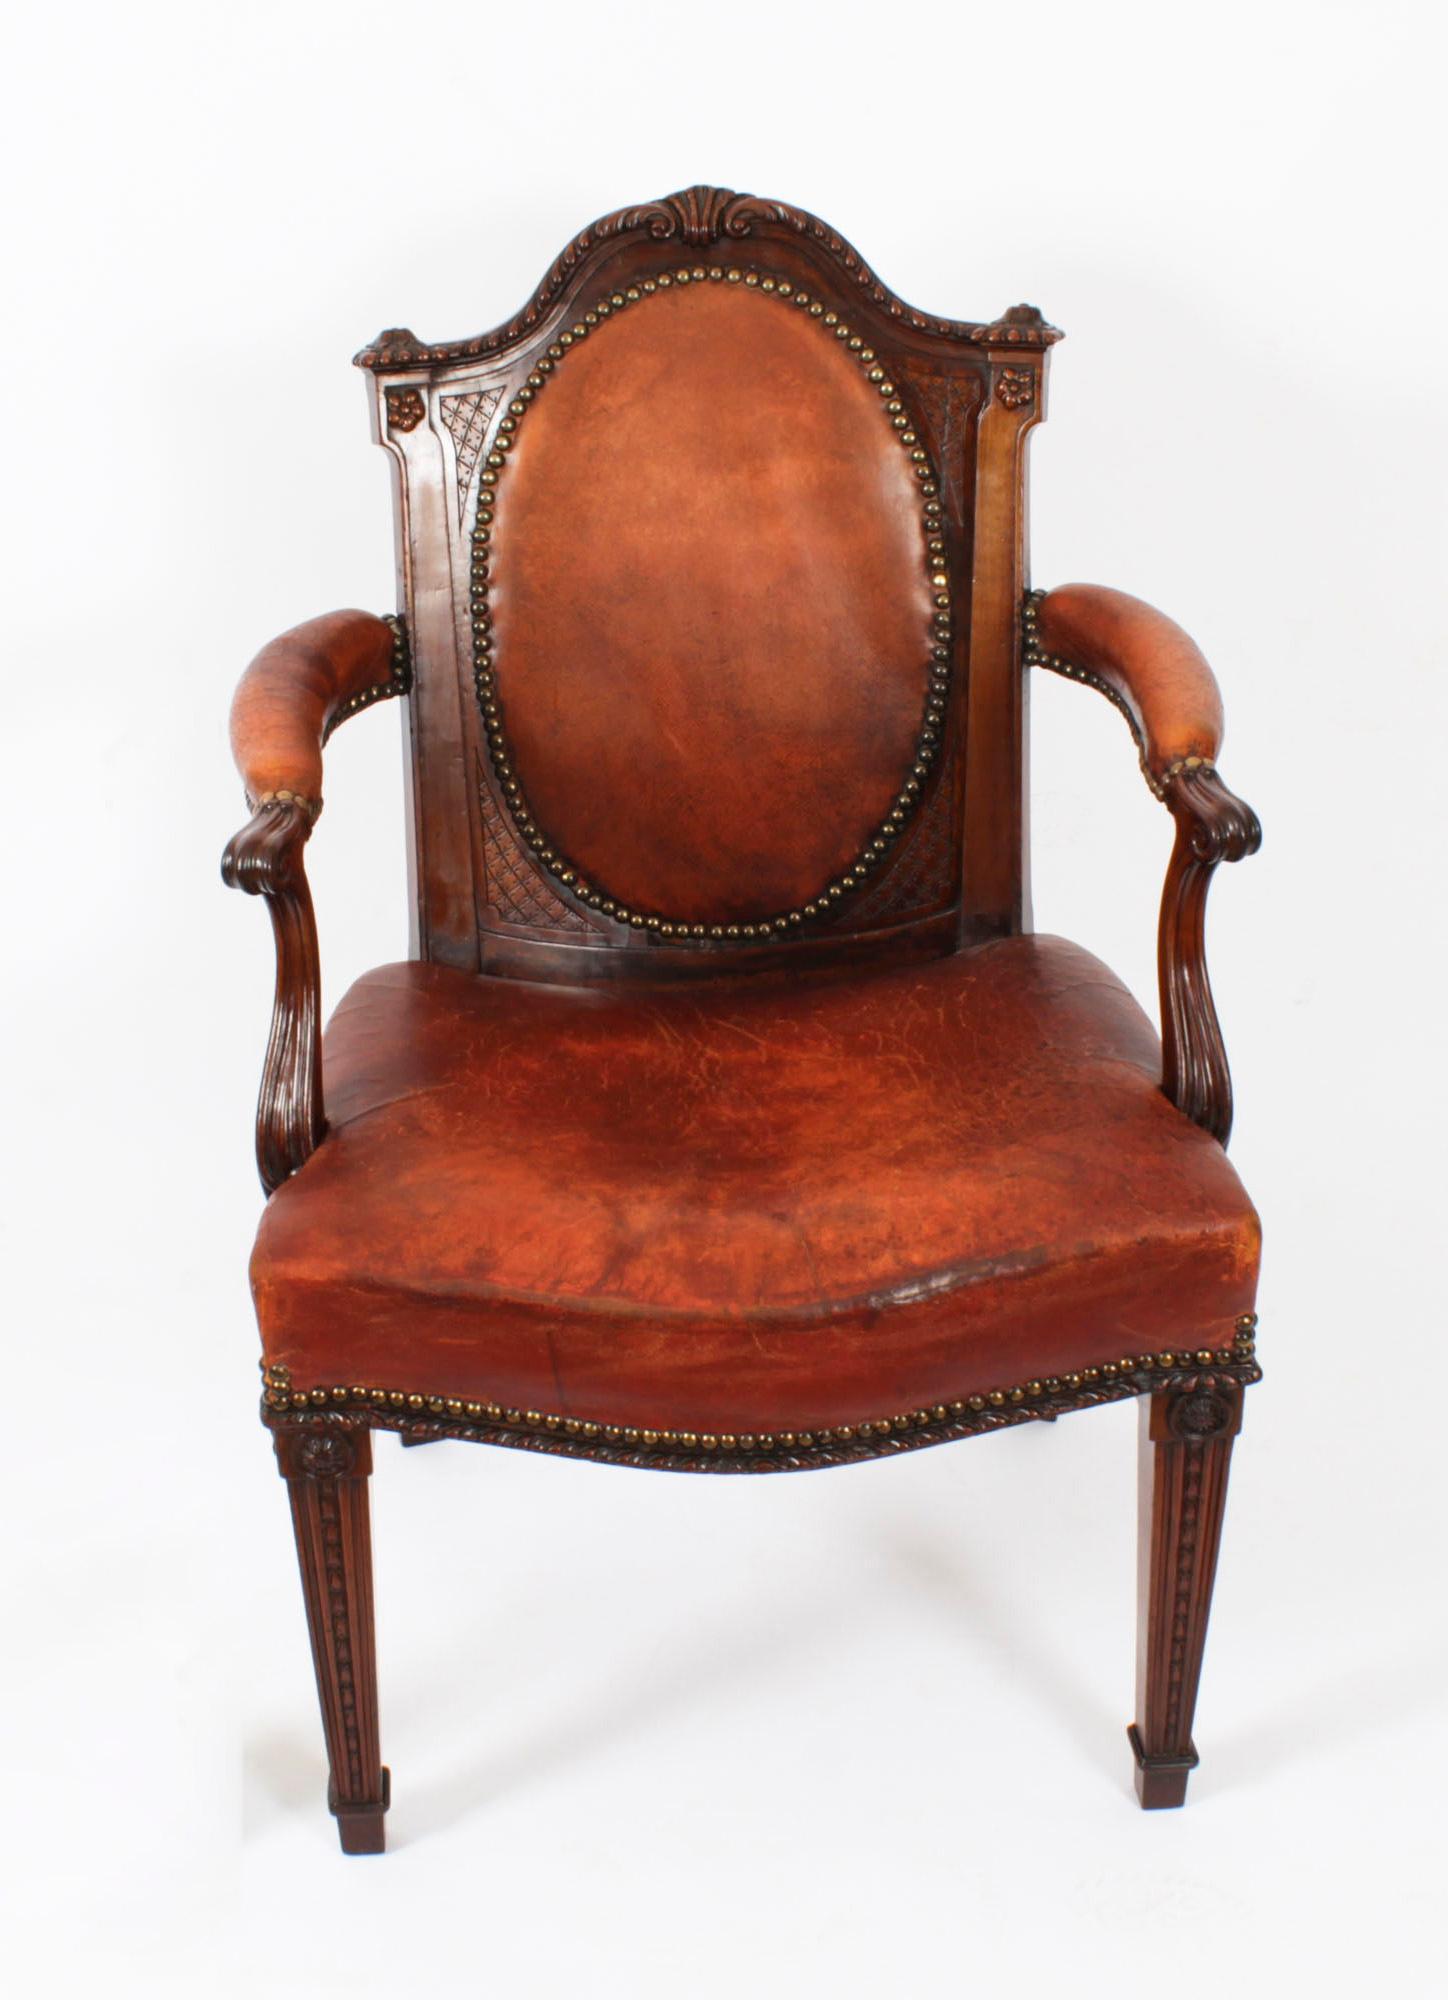 Dies ist eine fantastische antike viktorianische Mahagoni Schreibtisch Sessel, CIRCA 1860 in Datum.

Fachmännisch hergestellt aus hervorragend geschnitztem Mahagoni, mit gepolstertem Sitz und einer ovalen Rückenlehne, die mit dem prächtigen